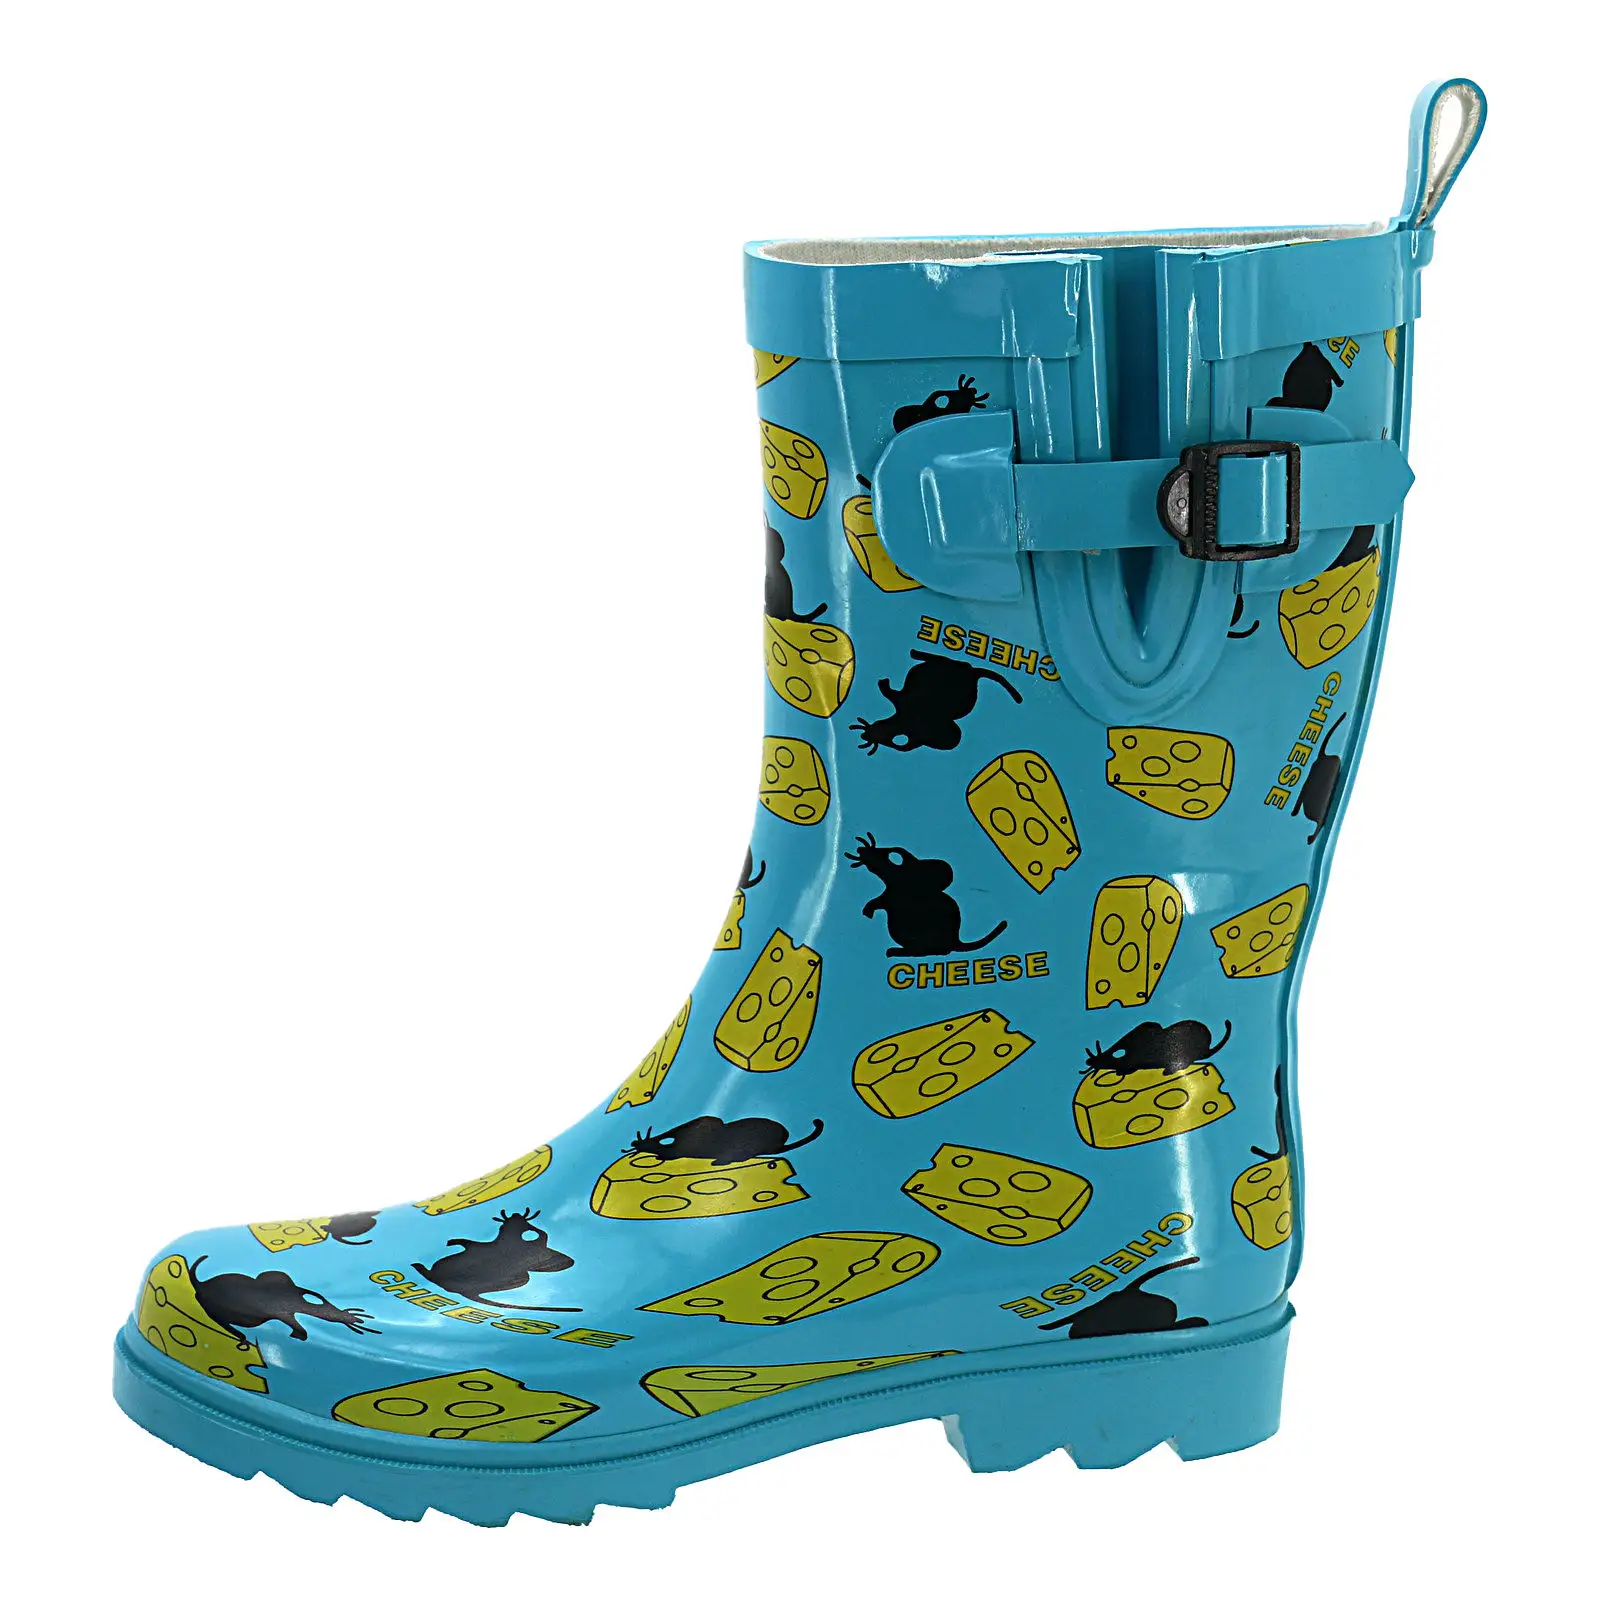 Moda yeni orta buzağı kadın botları baskı özel su geçirmez yağmur çizmeleri bahçe botları